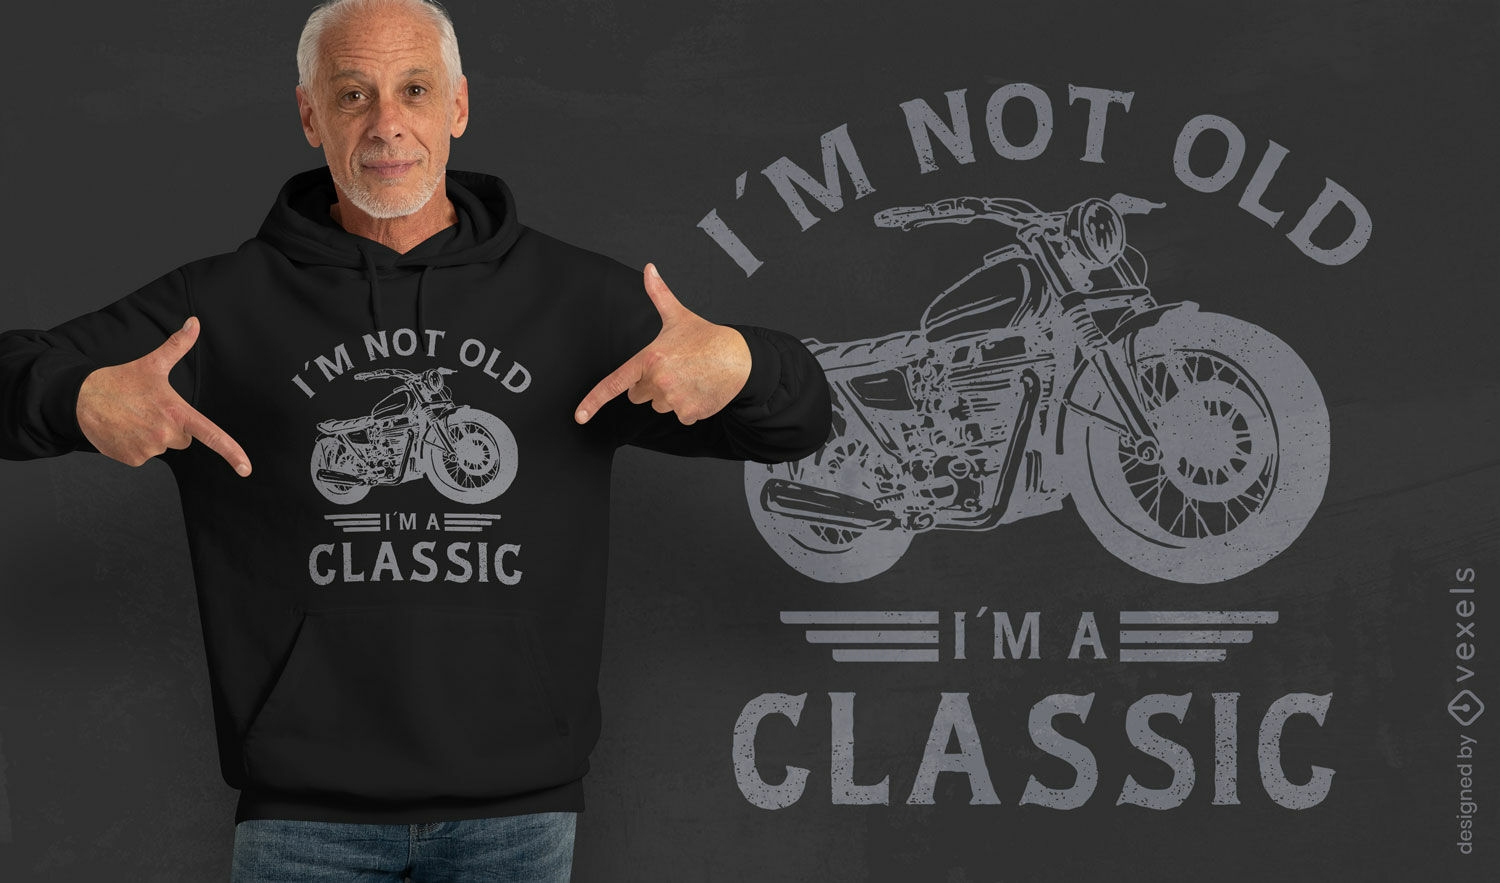 Dise?o cl?sico de camiseta de moto vintage.